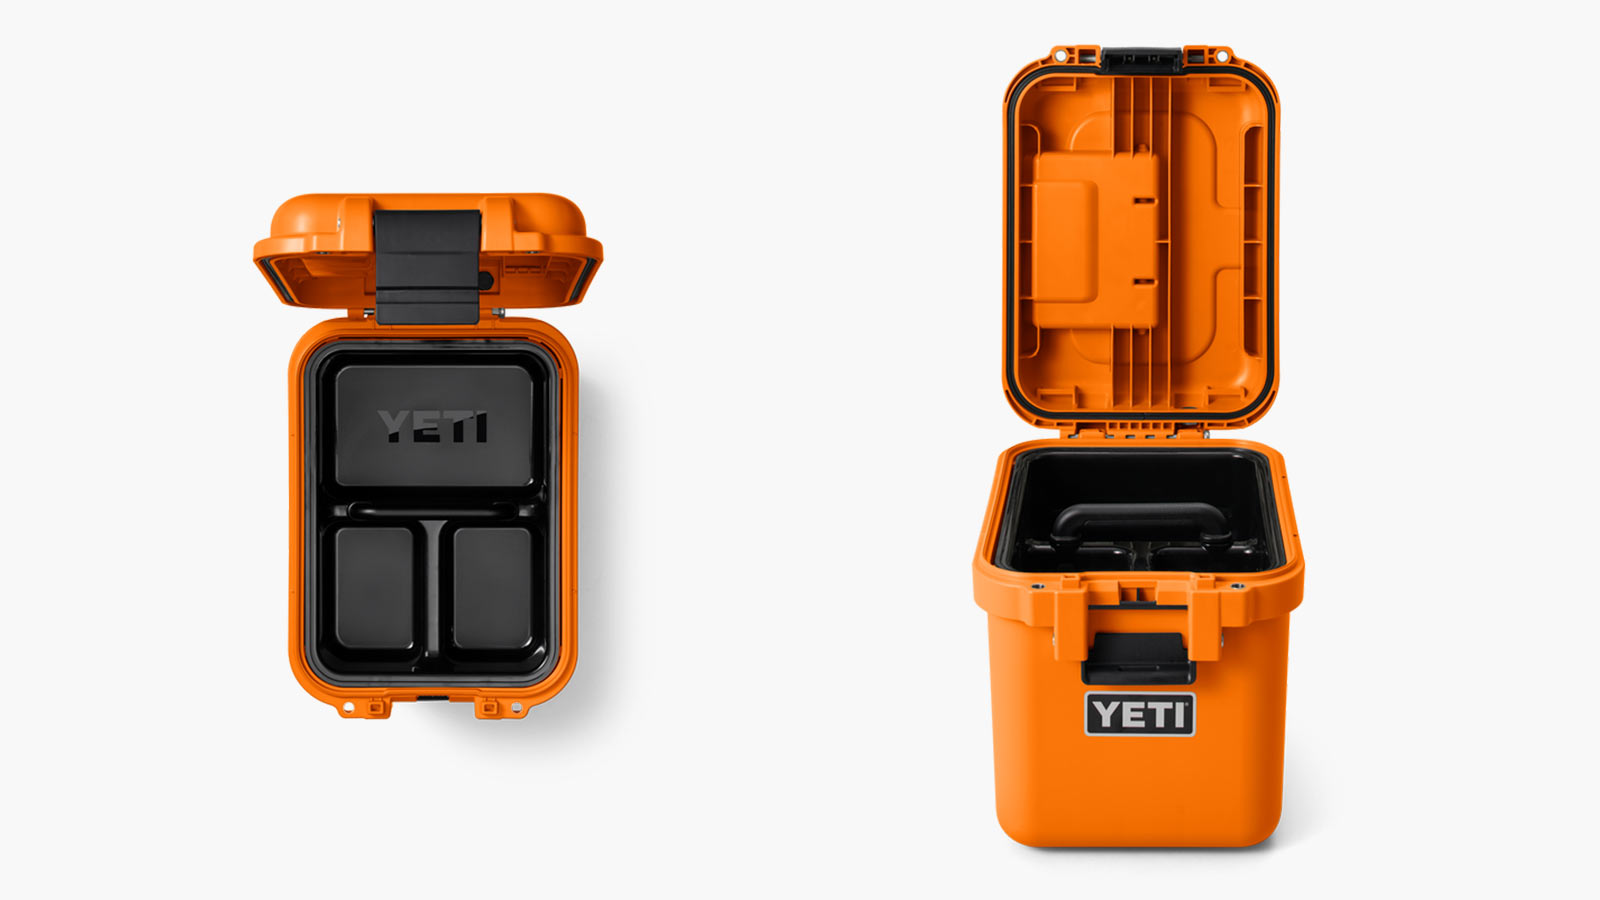 YETI- Loadout GoBox 15 Gear Case King Crab Orange